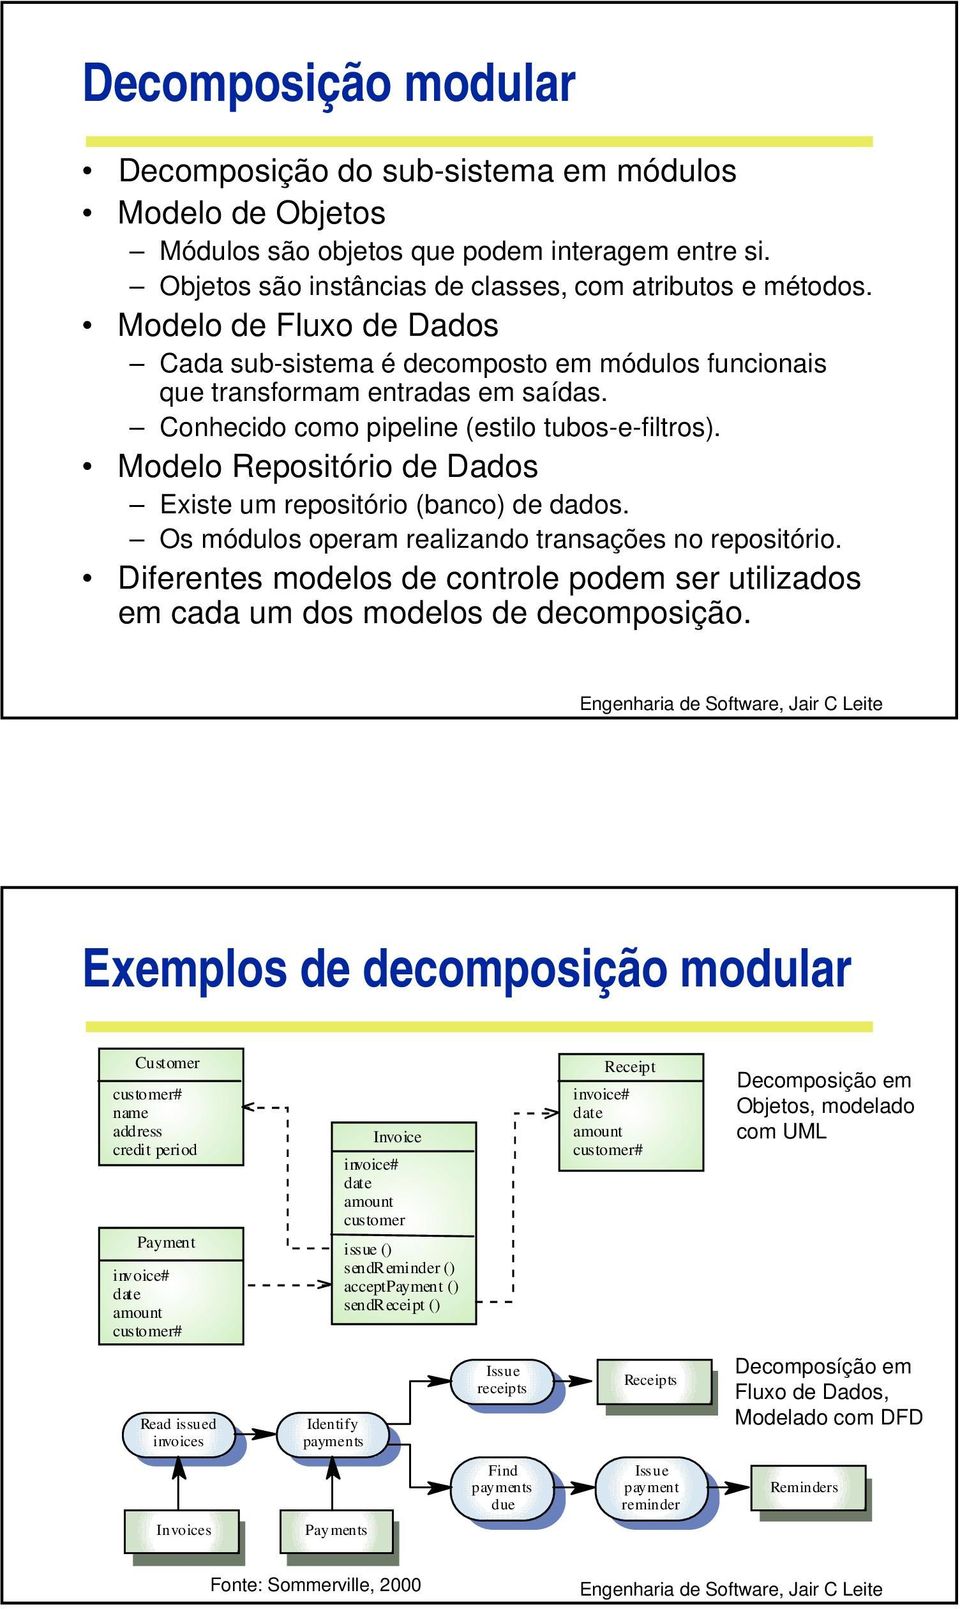 Modelo Repositório de Dados Existe um repositório (banco) de dados. Os módulos operam realizando transações no repositório.